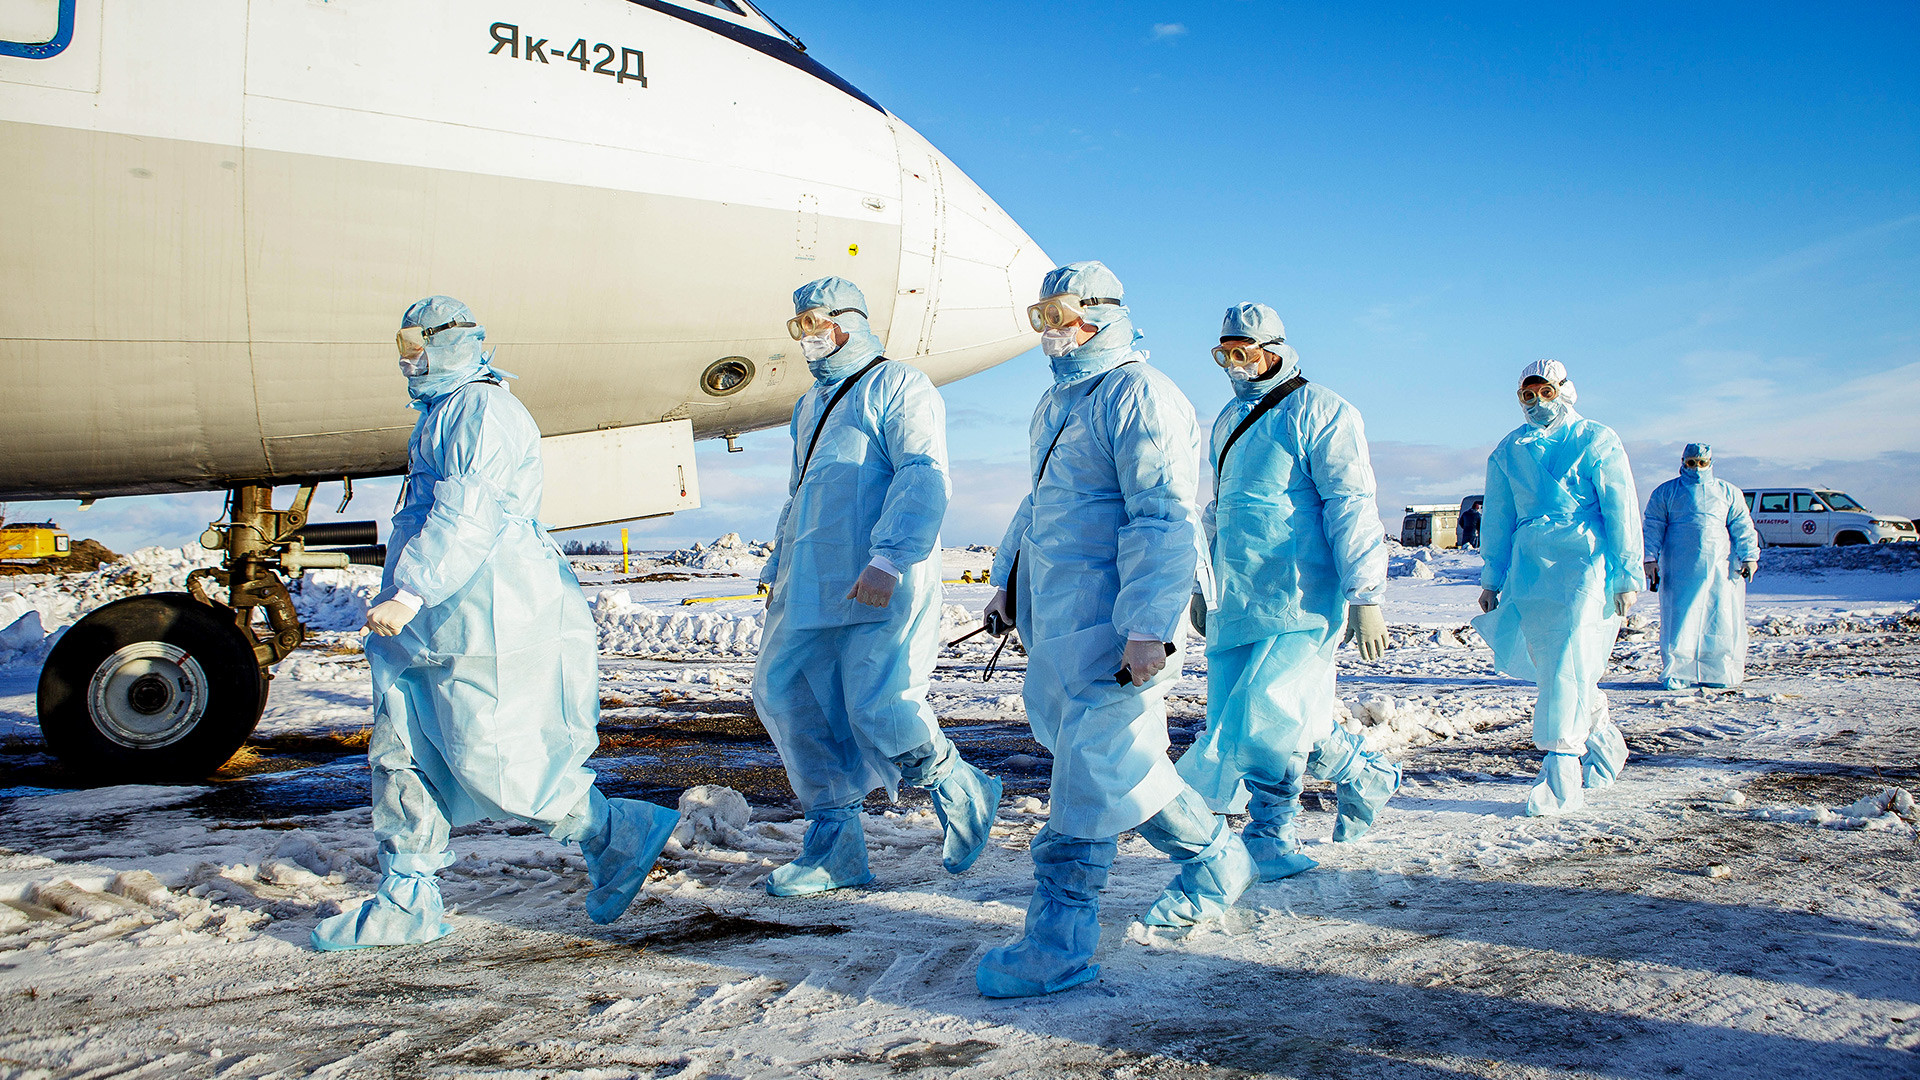 Obuka za evakuaciju putnika kod kojih se sumnja na koronavirus, aerodrom u Čeljabinsku, 5. veljače 2020.